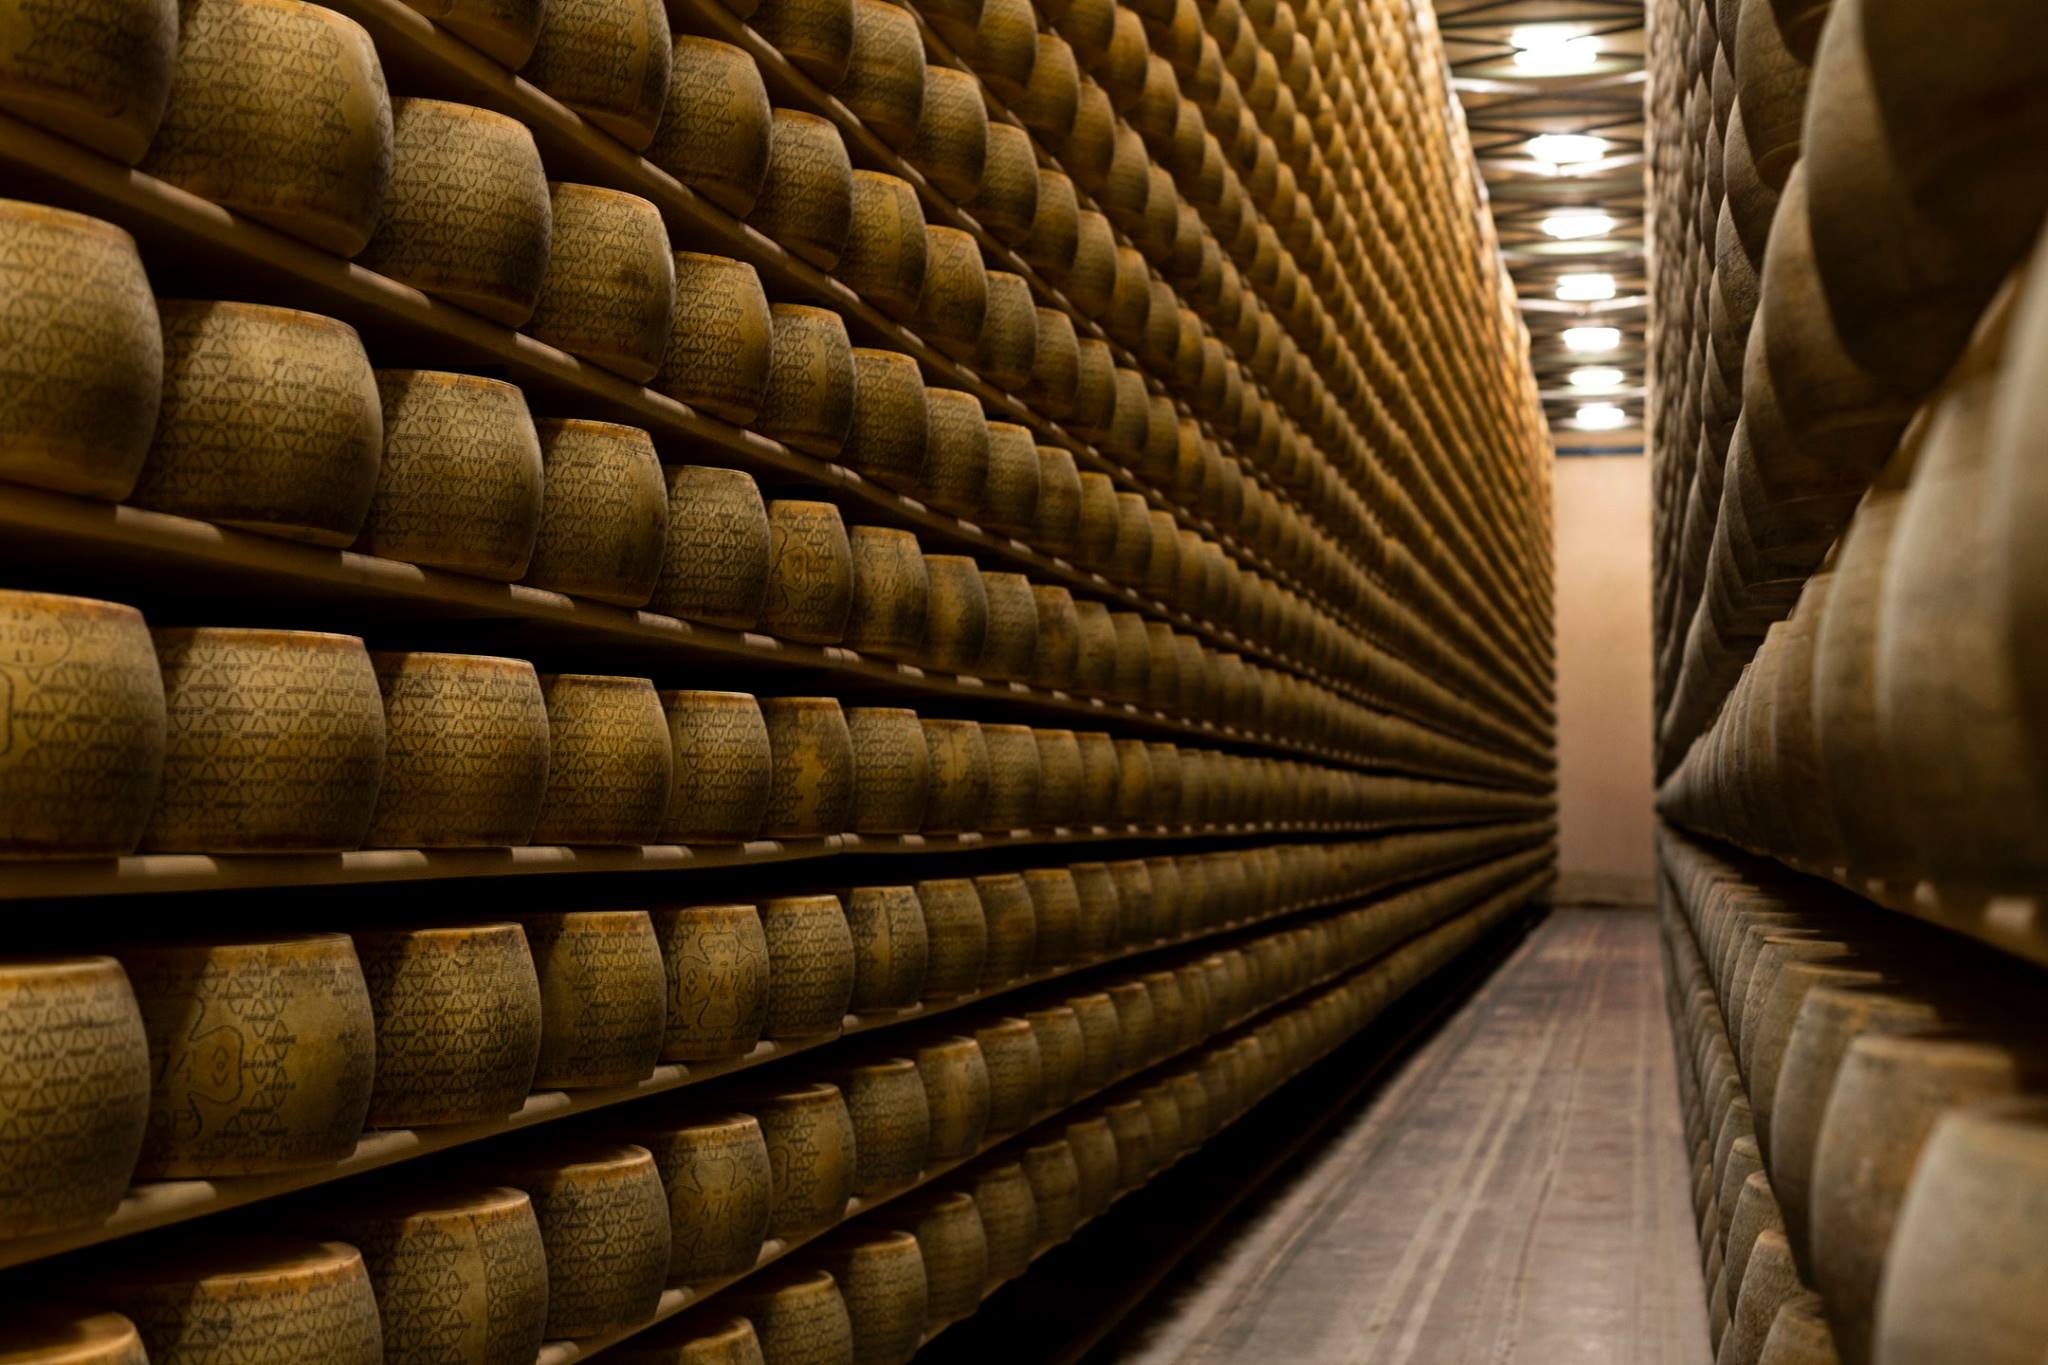 Muere empresario italiano al ser aplastado por 25,000 hormas de queso Grana Padano